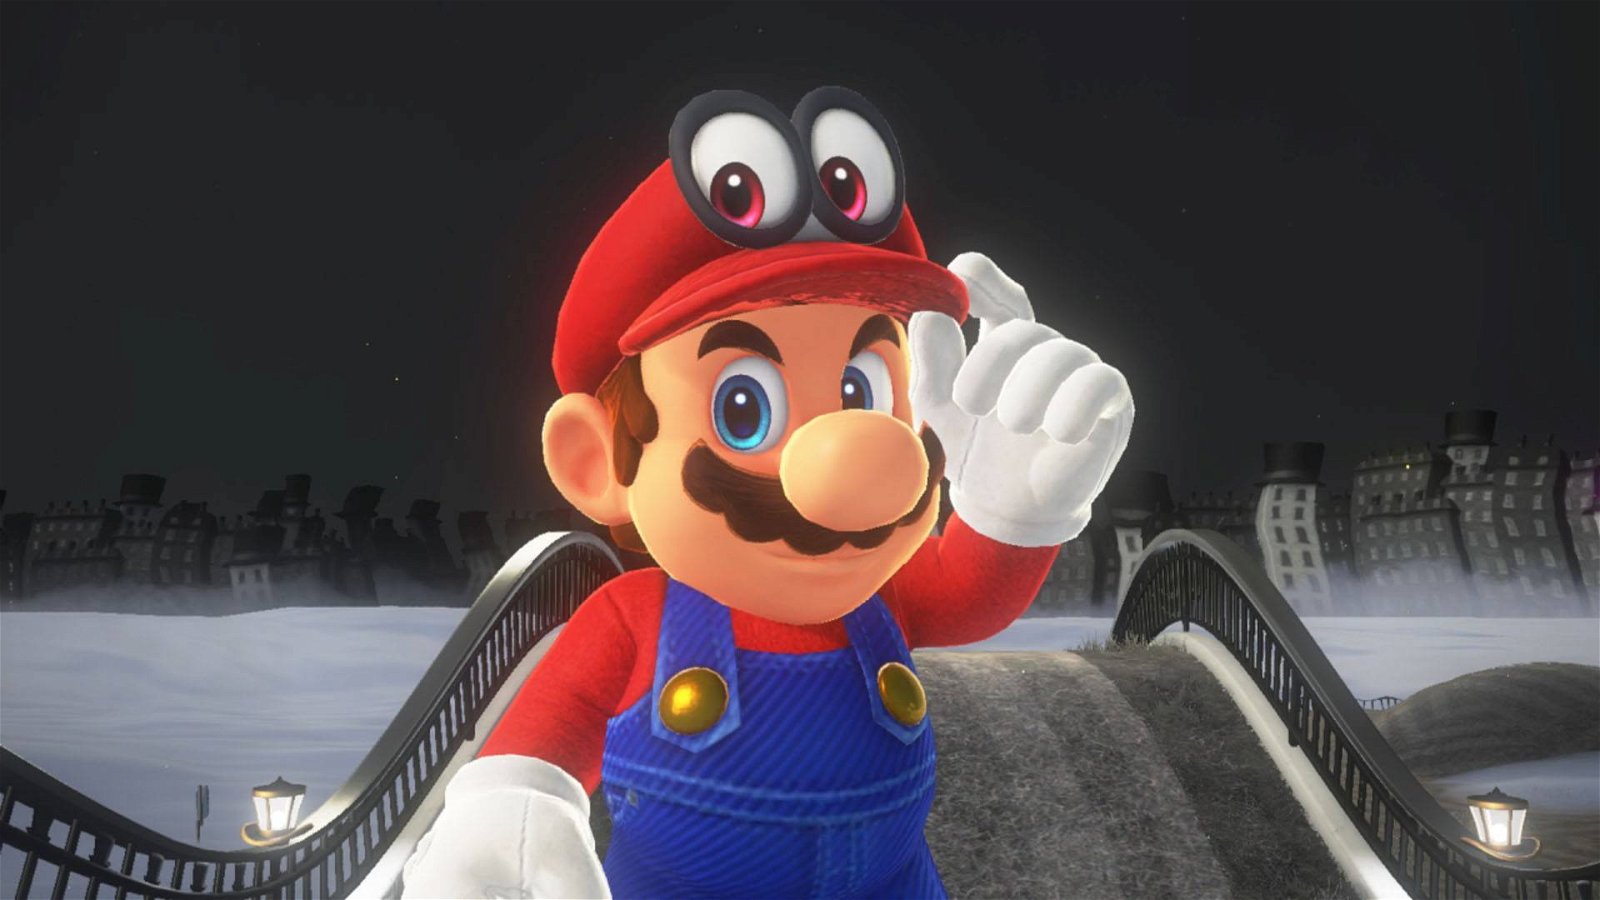 Immagine di Nintendo, nuovi giochi e remaster di Super Mario in arrivo nel 2020?